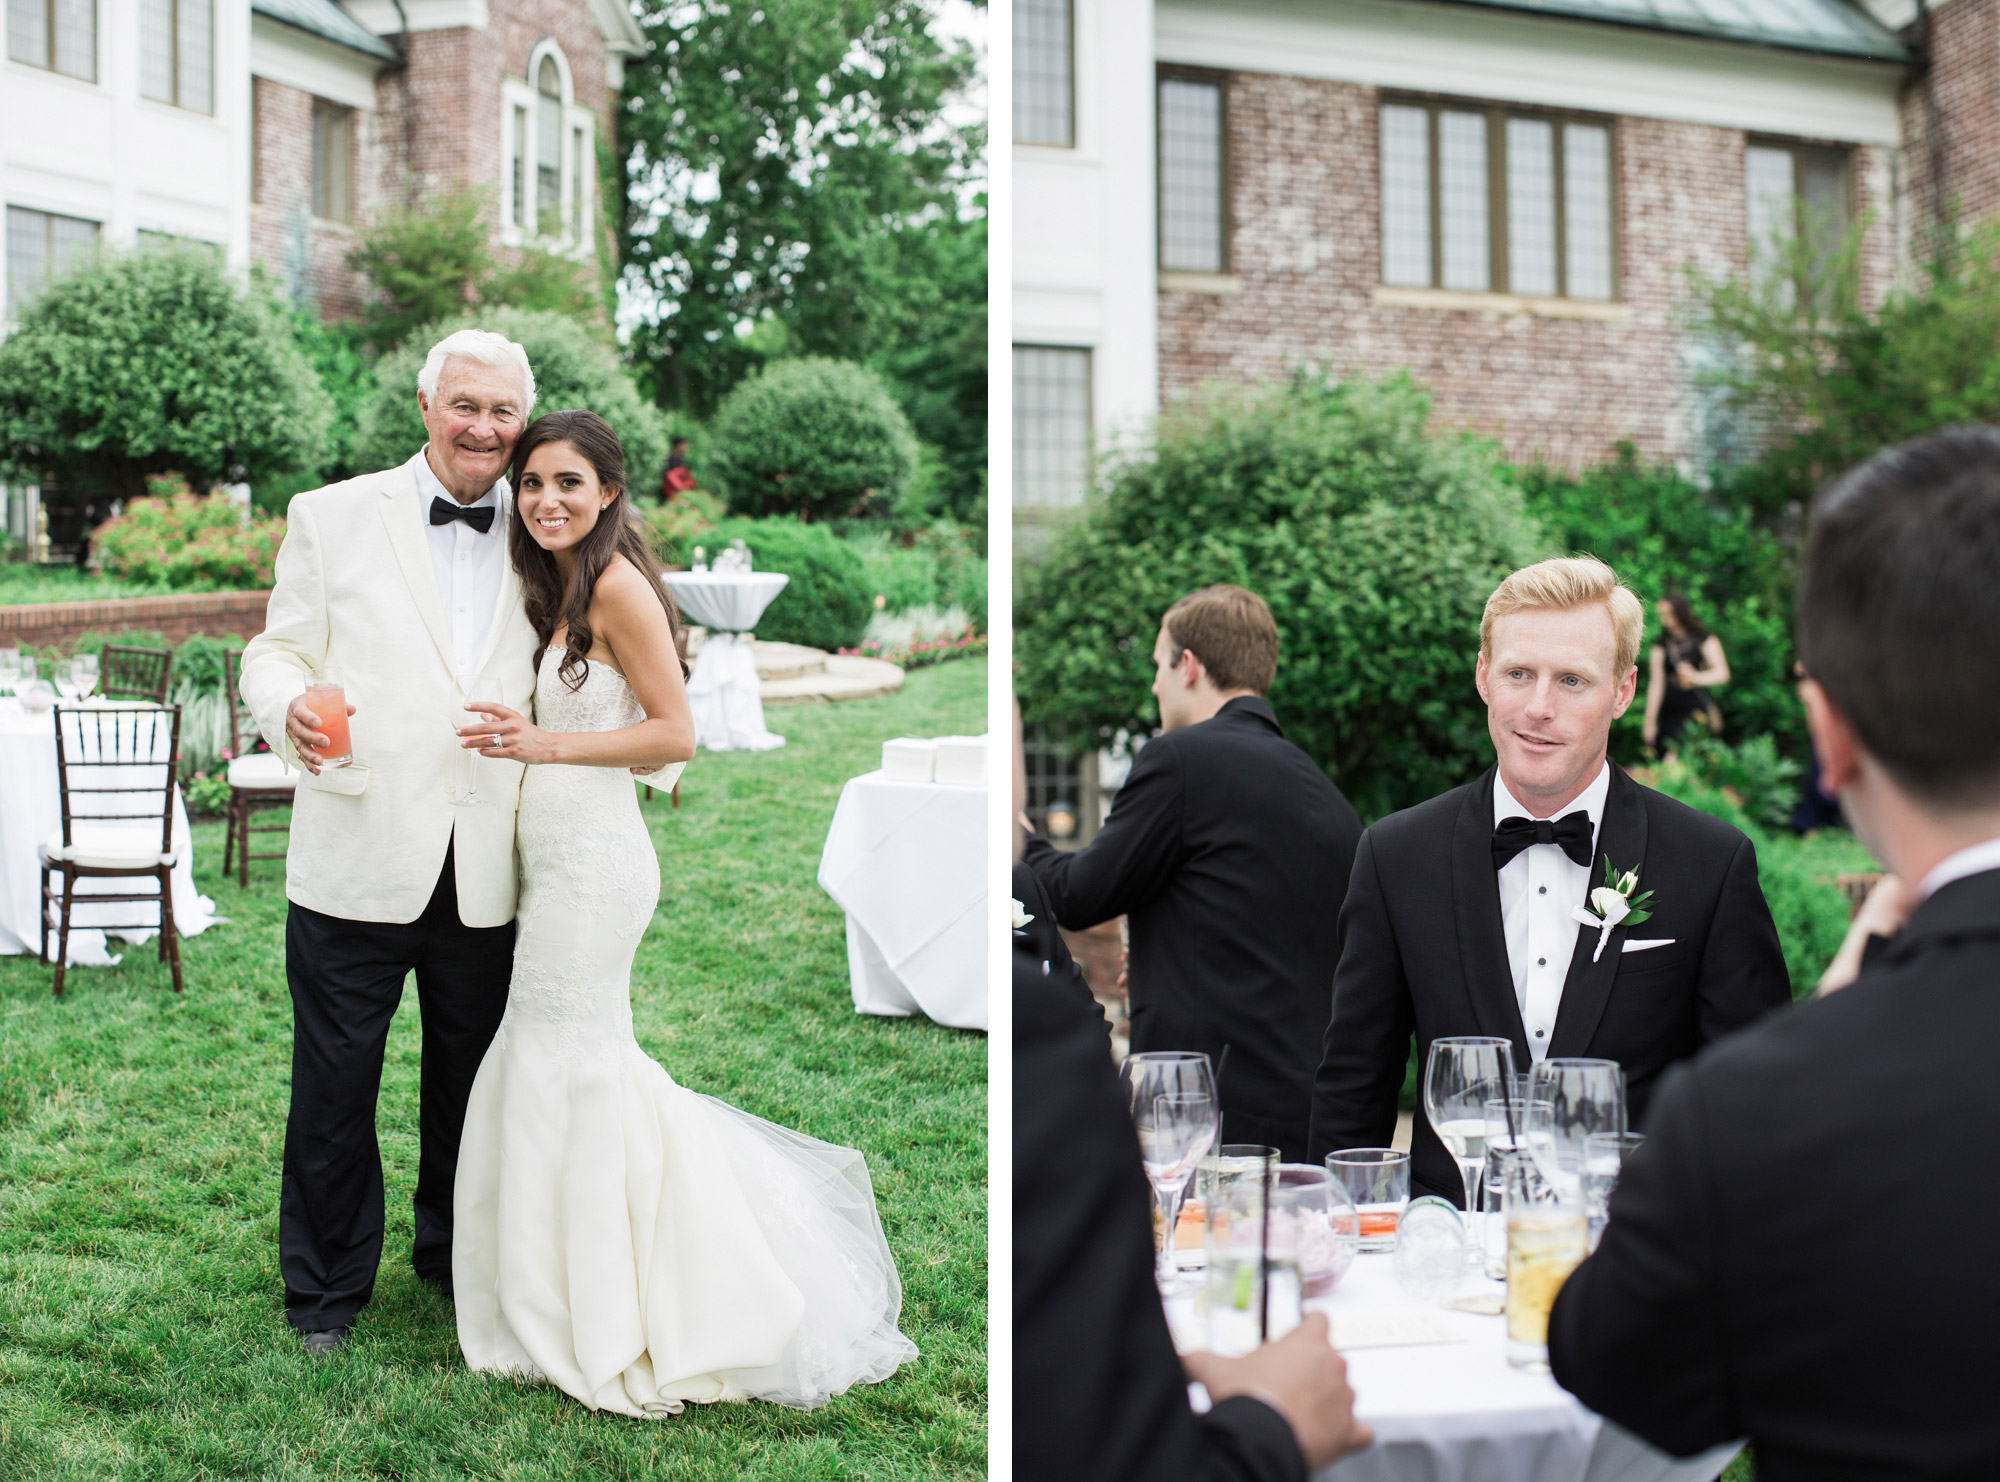 Wedding at Hamilton Farm Golf Club in Gladstone, NJ.  Kelly Kollar Photography.  